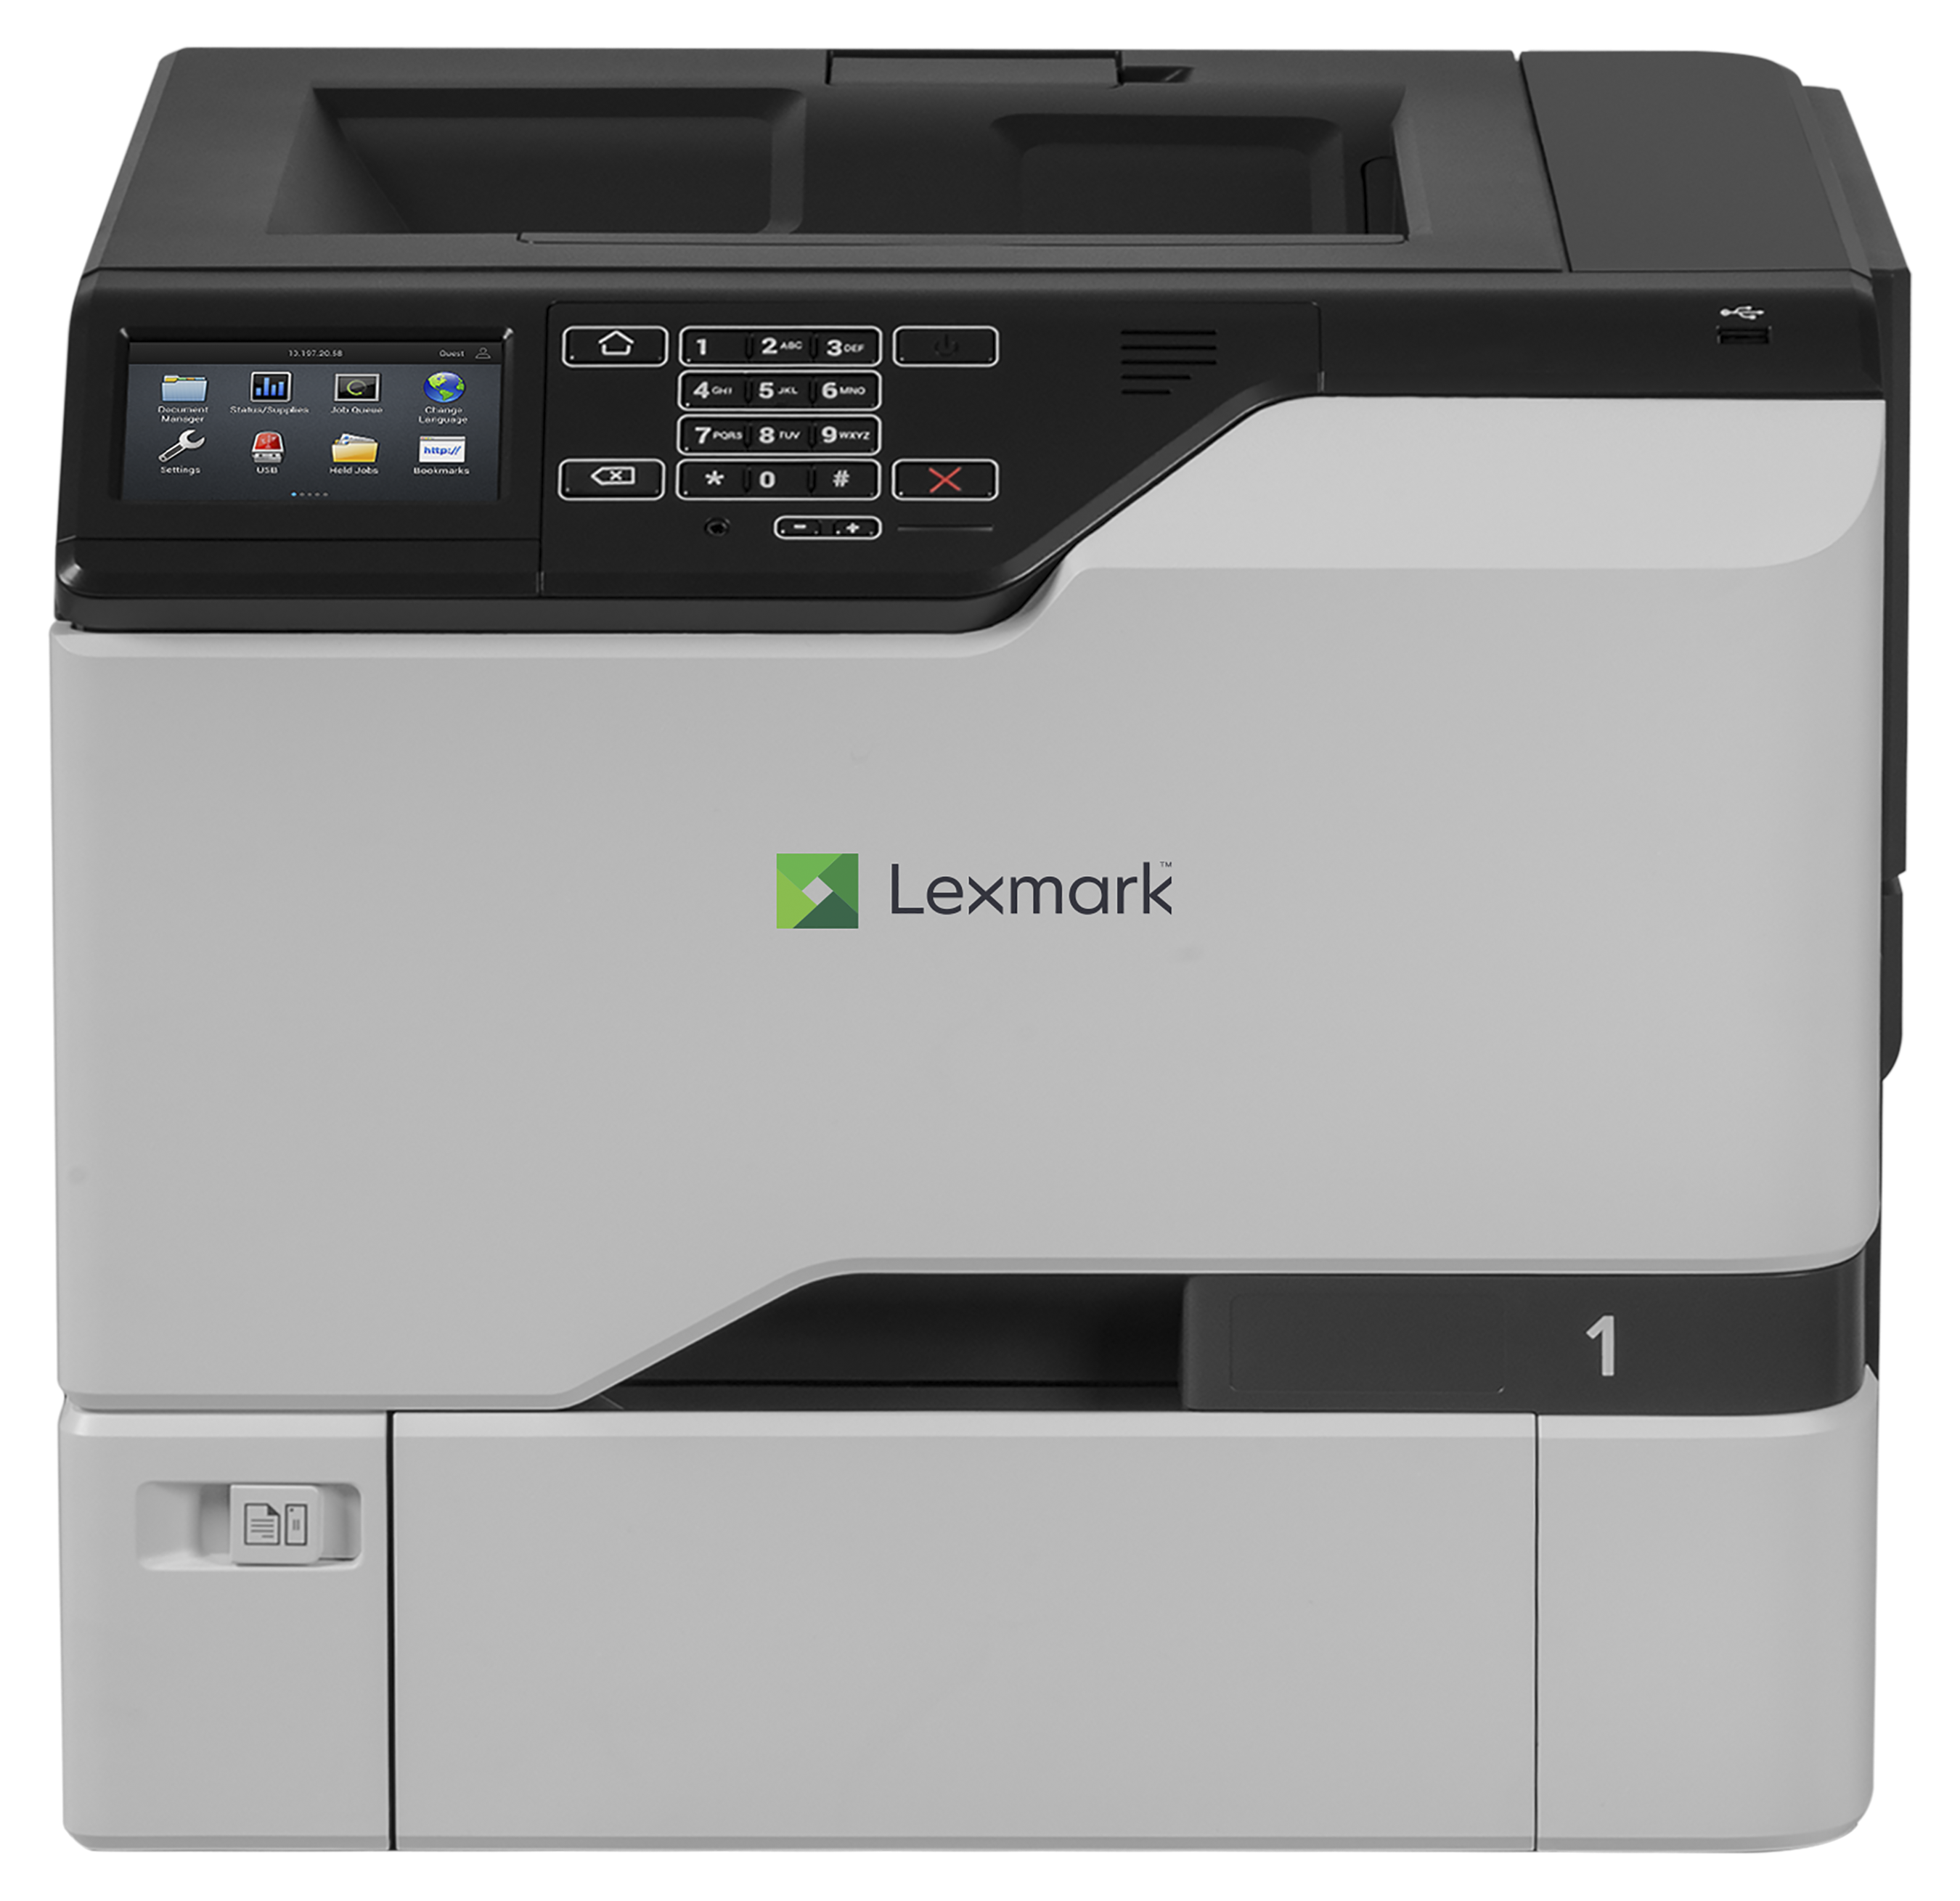 Принтеры lexmark купить. Lexmark cs720. Lexmark cs521. Принтер лазерный Lexmark cs725de. МФУ Lexmark mx317dn.